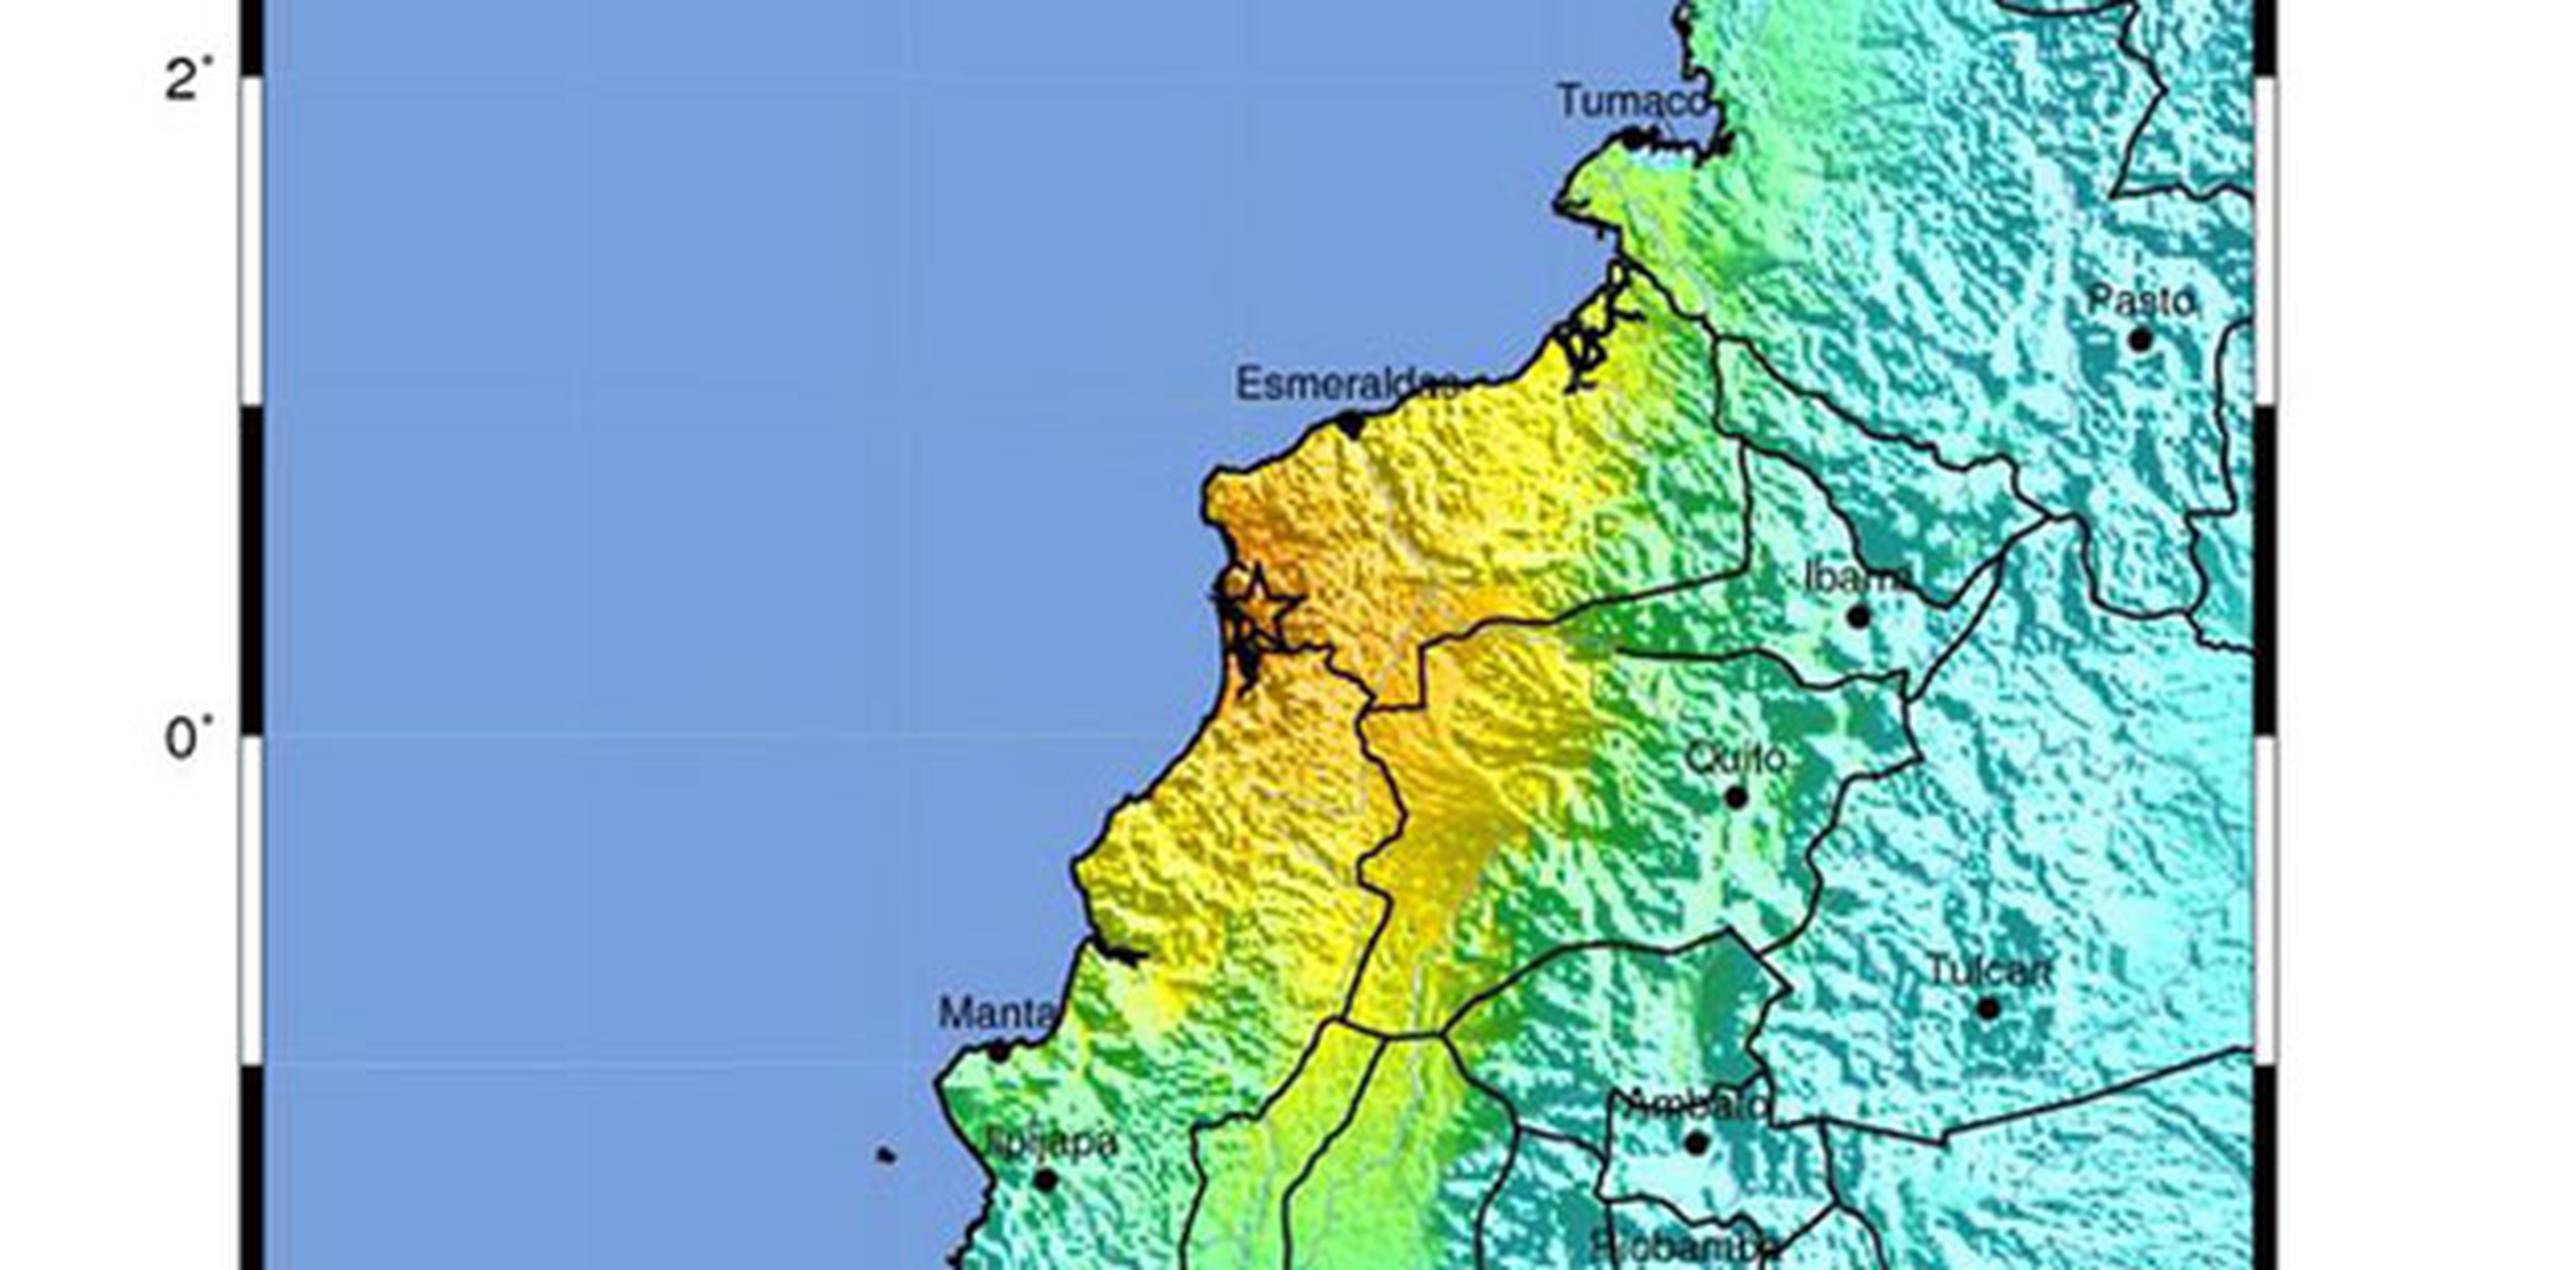 La Armada ordenó proceder con calma a la evacuación de las localidades bajas de las regiones de Tumbes y Piura, dos regiones costeras del norte de Perú, situadas en la frontera con Ecuador, a cuyos habitantes instó a trasladarse a zonas seguras. (EFE)